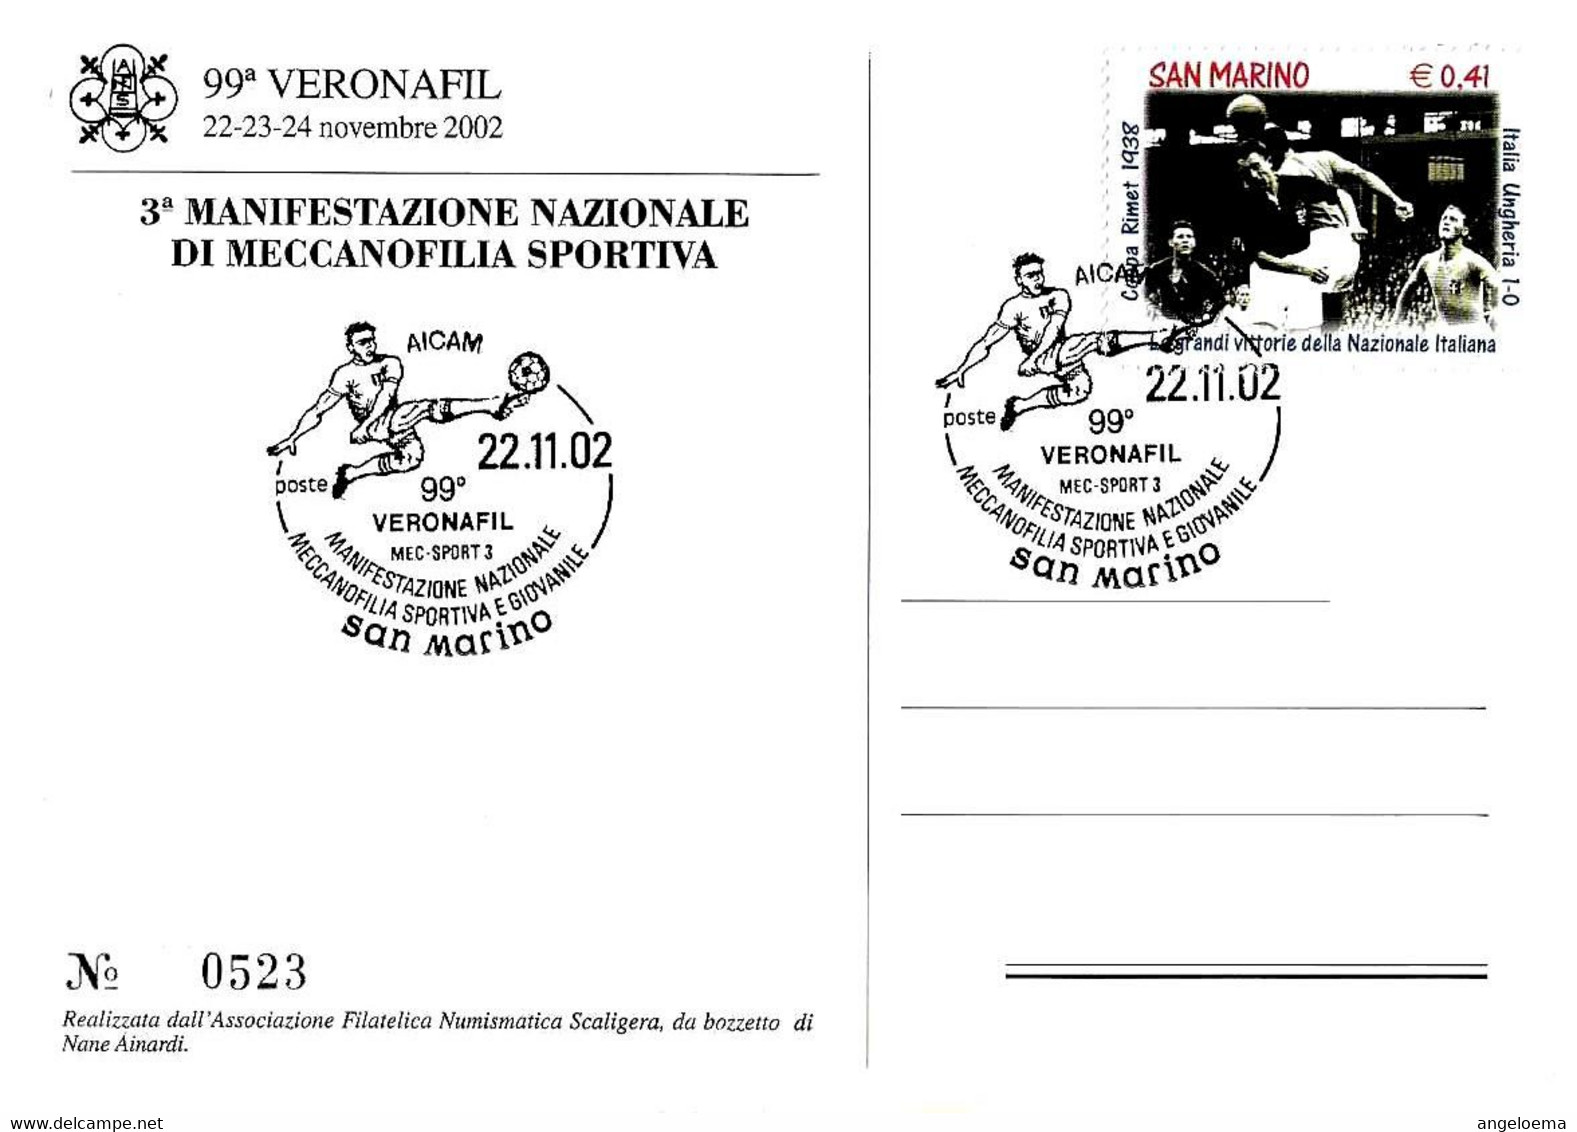 SAN MARINO - 2002 99^ Veronafil 3^ Manifestazione Naz. Meccanofilia Sportiva (calciatore) Su Cartolina Ufficiale -7873 - Covers & Documents